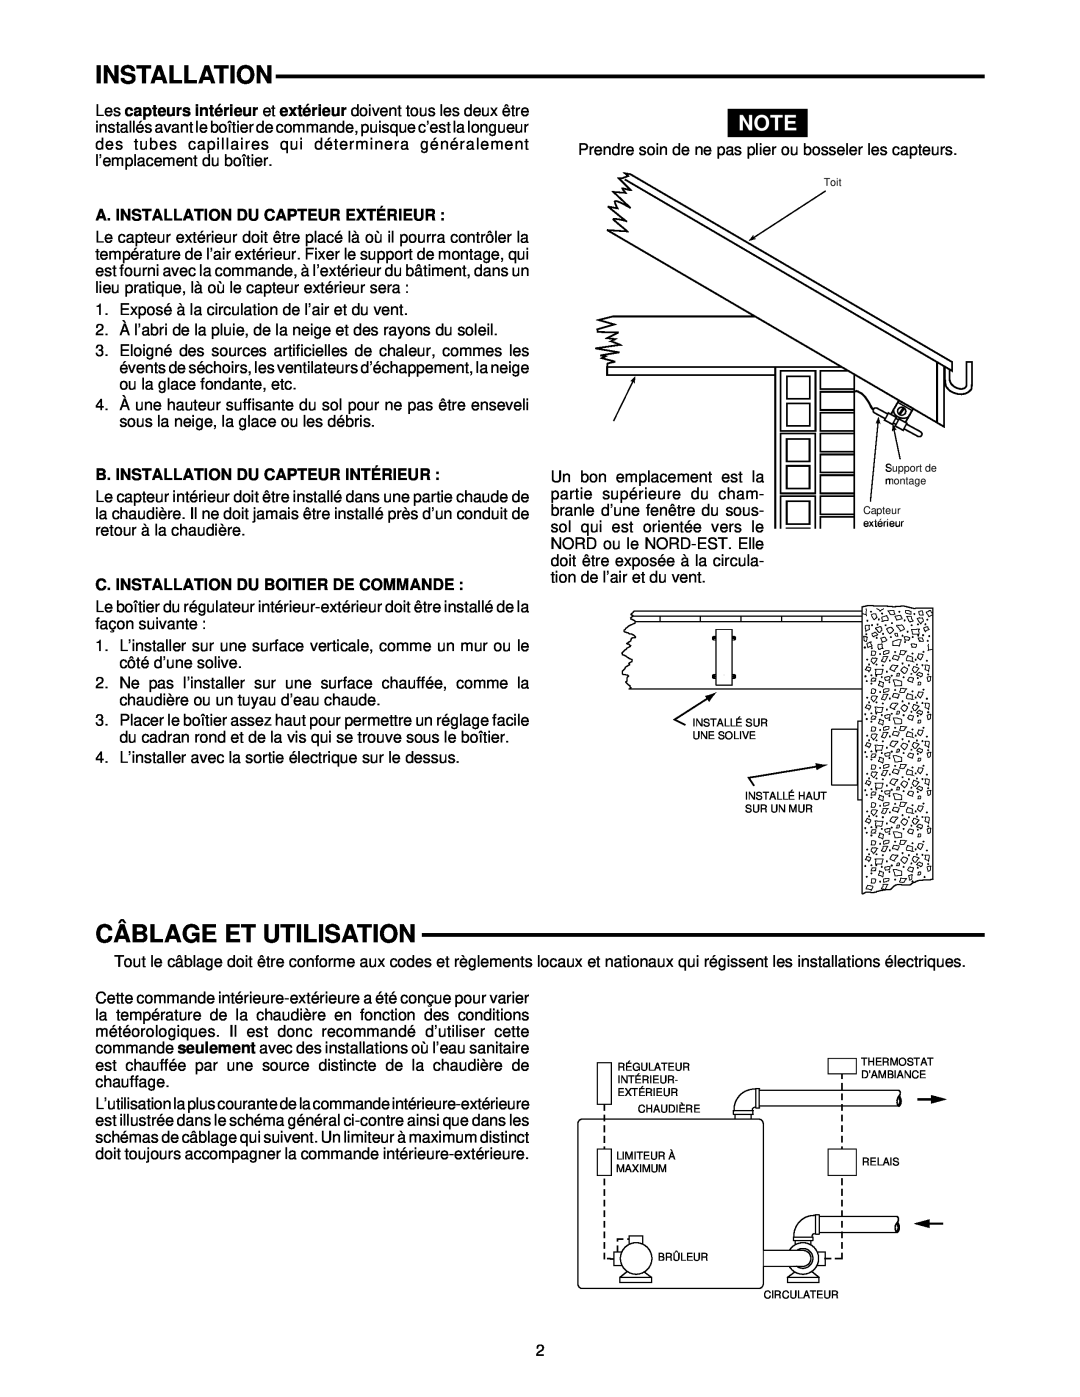 White Rodgers 1050 Câblage Et Utilisation, A. Installation Du Capteur Extérieur, B. Installation Du Capteur Intérieur 